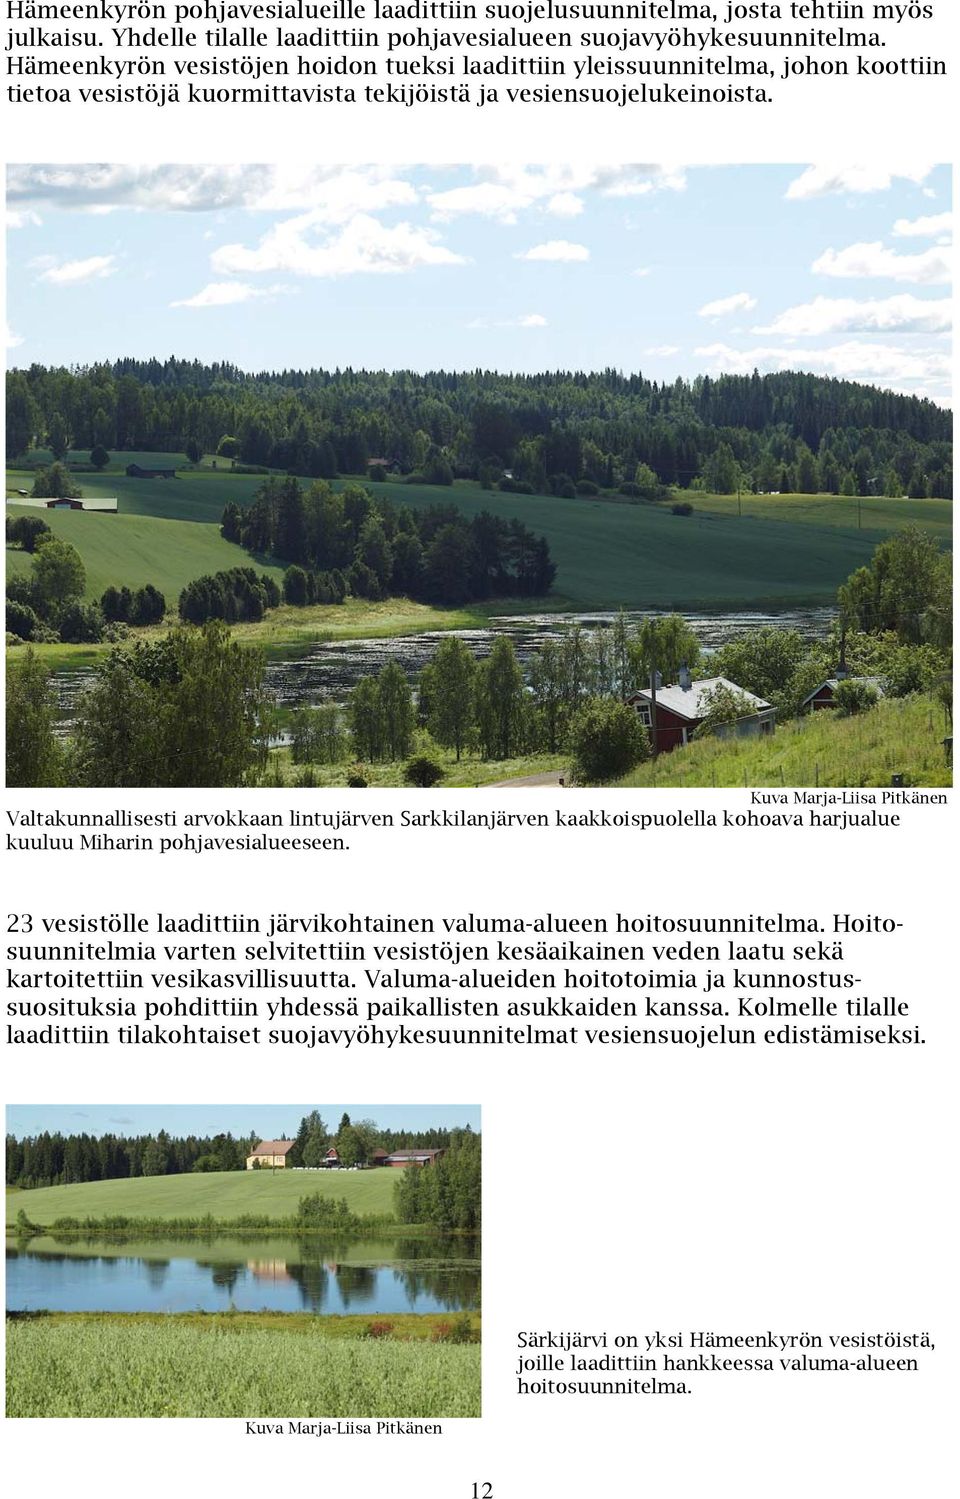 Valtakunnallisesti arvokkaan lintujärven Sarkkilanjärven kaakkoispuolella kohoava harjualue kuuluu Miharin pohjavesialueeseen. 23 vesistölle laadittiin järvikohtainen valuma-alueen hoitosuunnitelma.